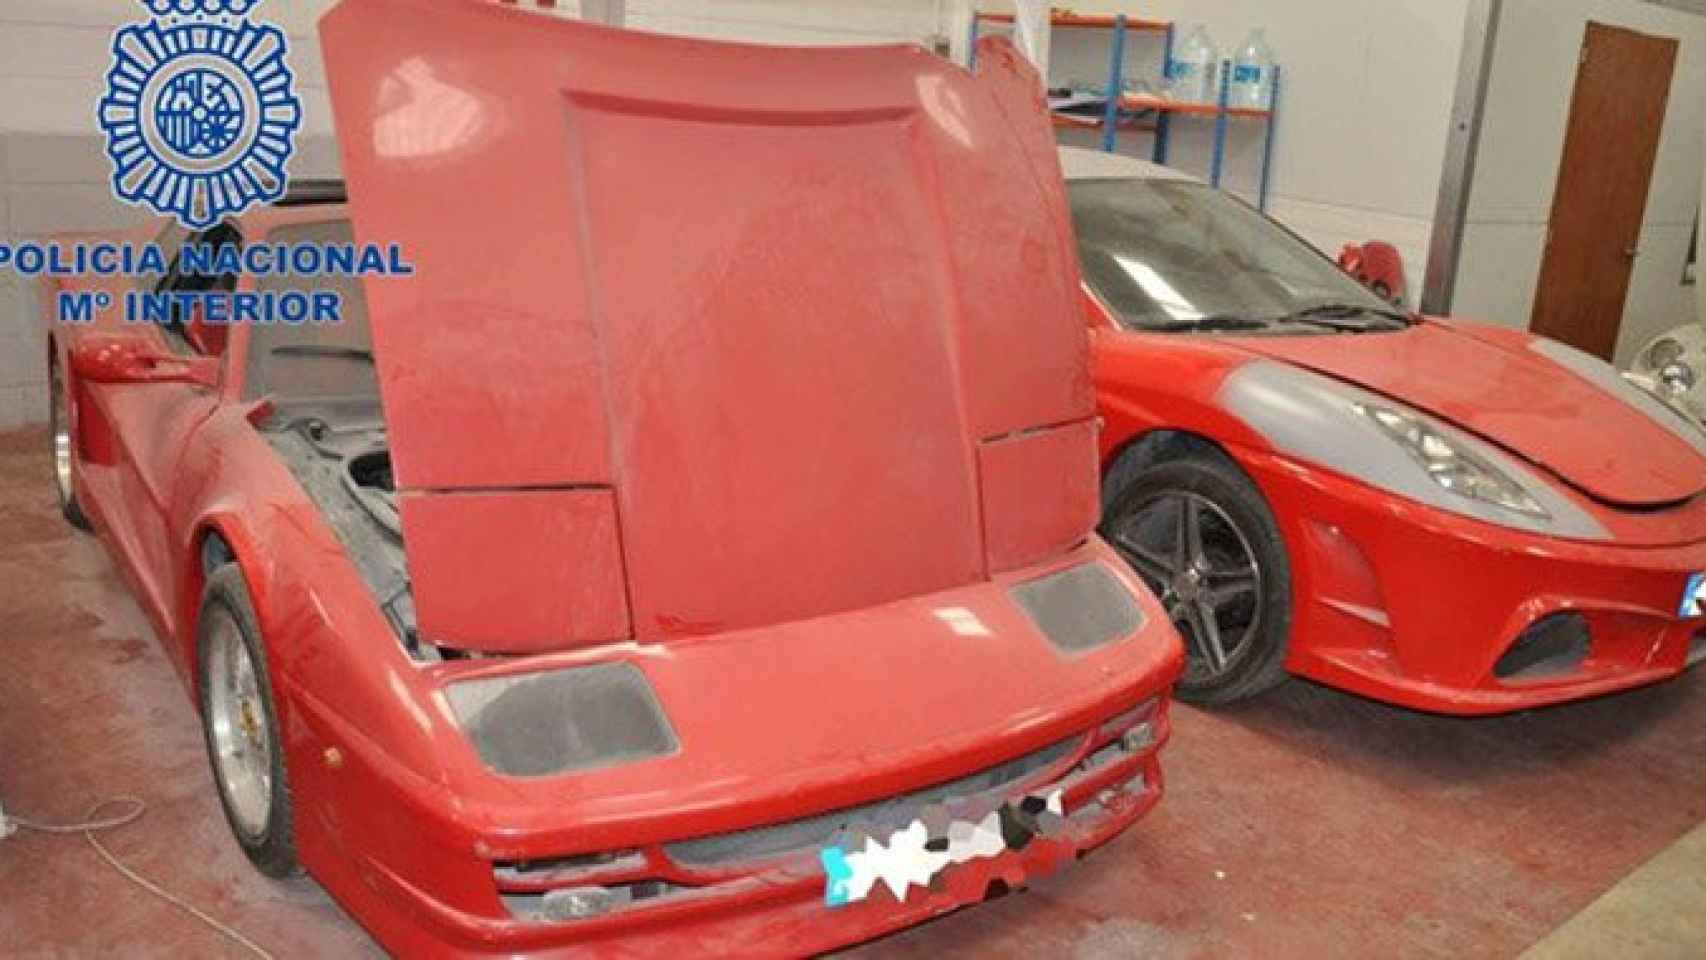 Réplicas de vehículos de Ferrari y Lamborghini descubiertos por la Policía Nacional en Sils (Girona) / POLICÍA NACIONAL